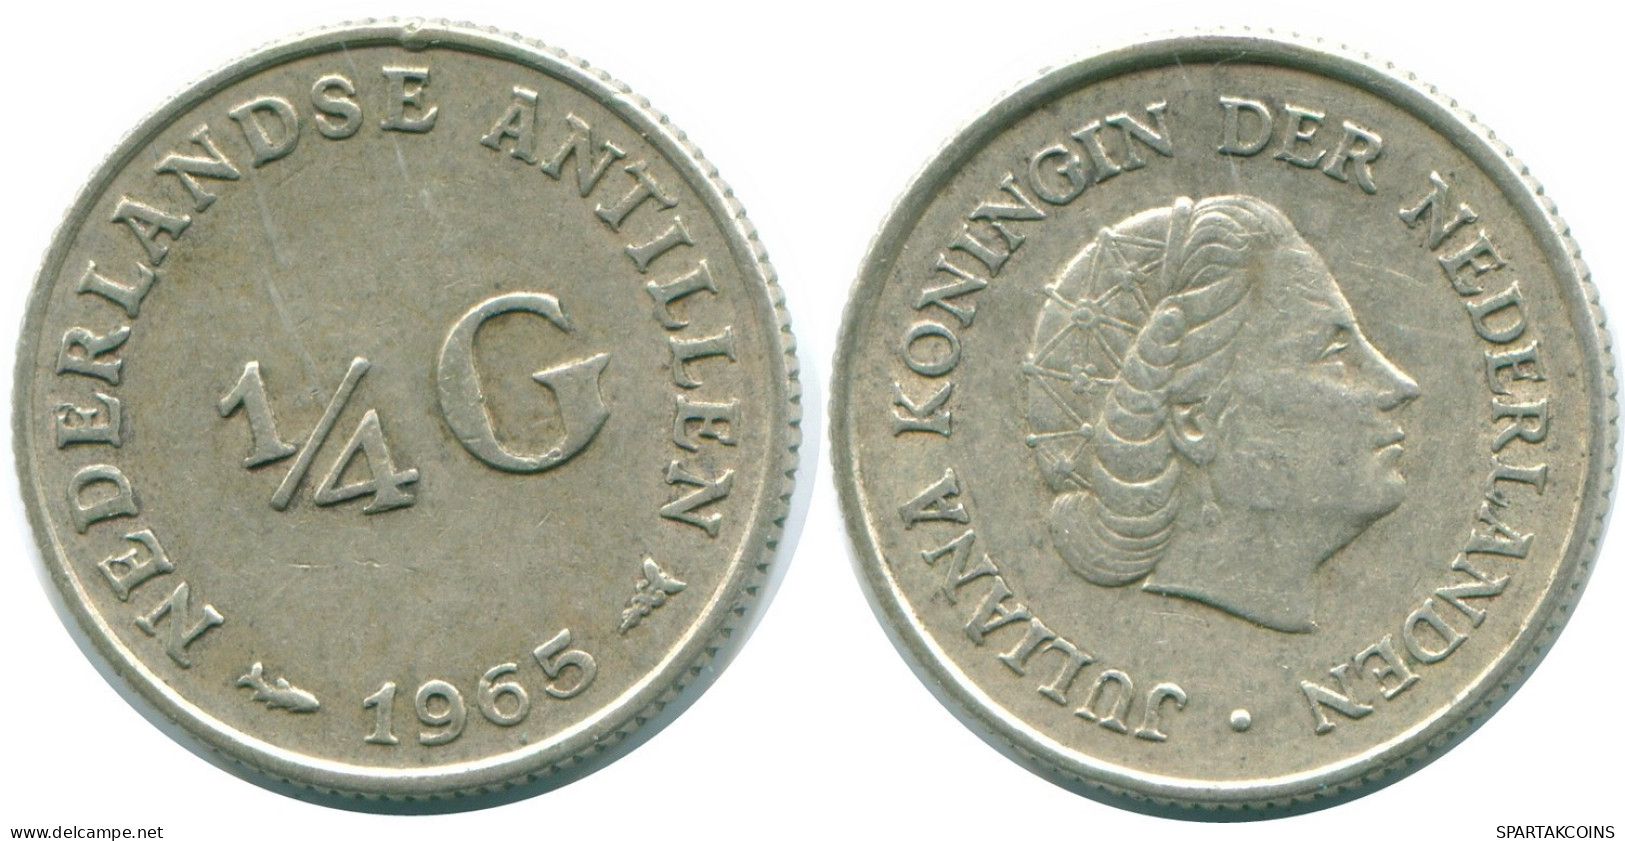 1/4 GULDEN 1965 NIEDERLÄNDISCHE ANTILLEN SILBER Koloniale Münze #NL11281.4.D.A - Antillas Neerlandesas